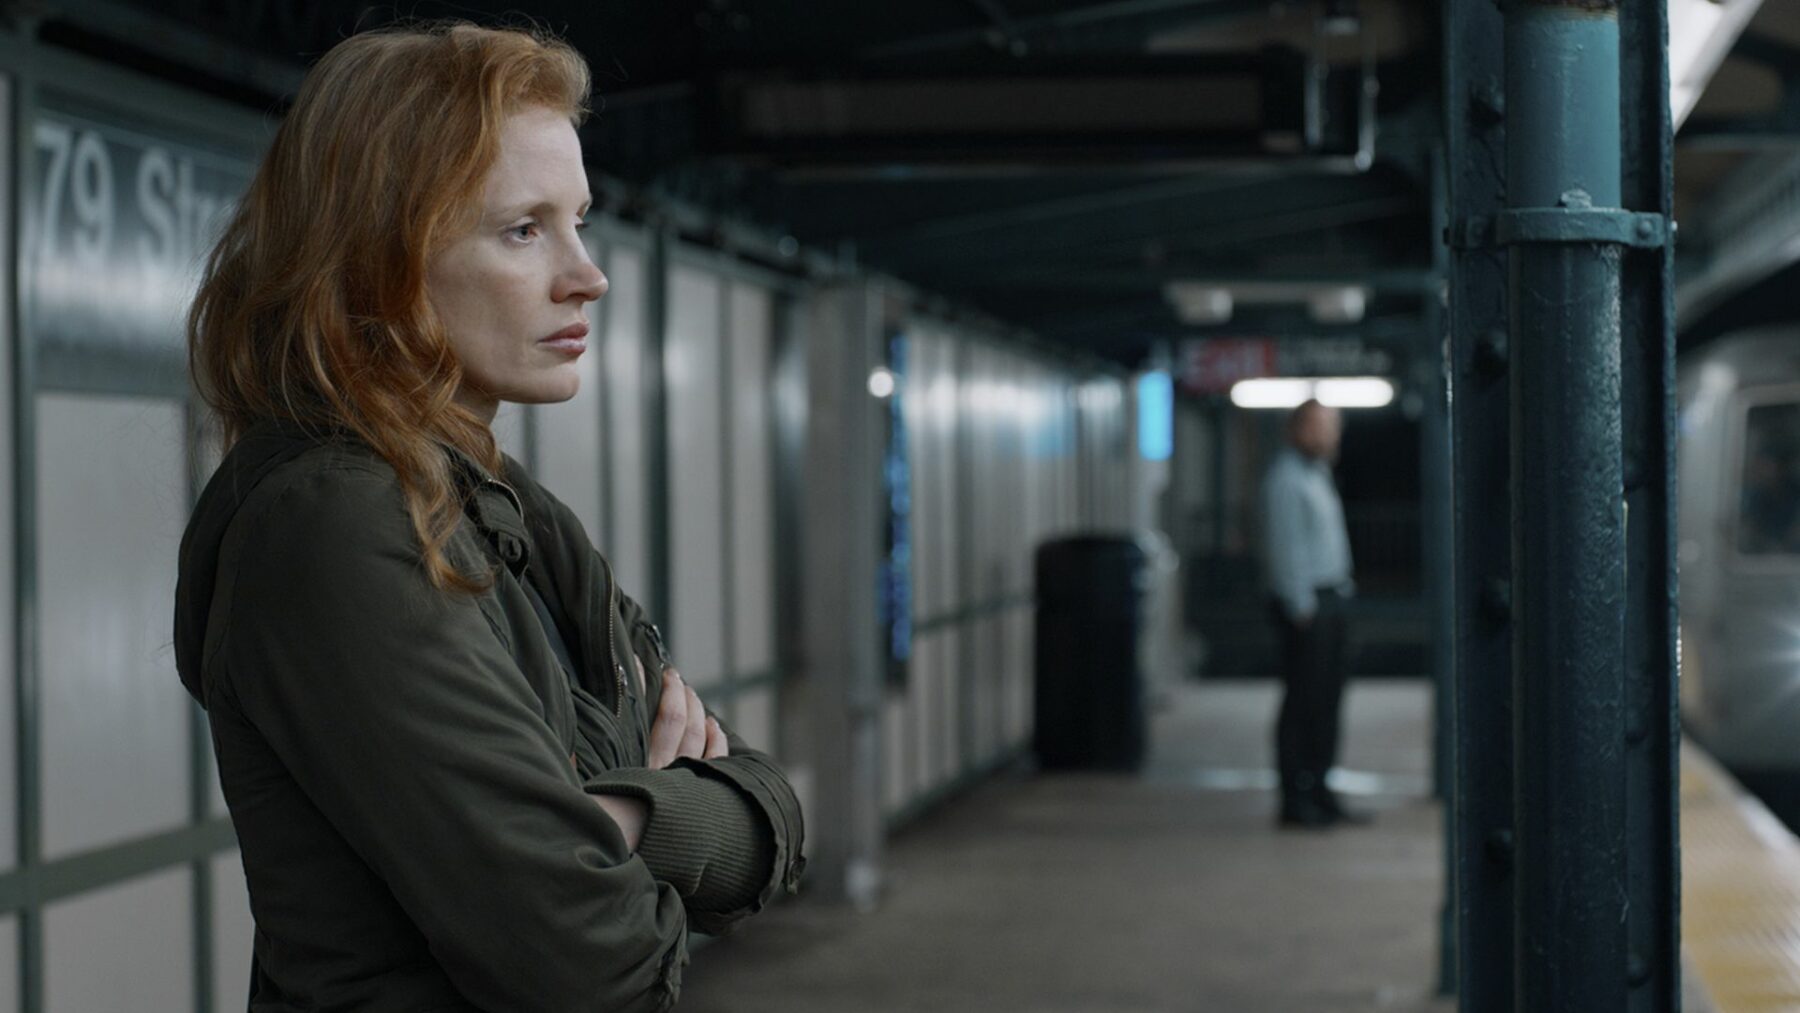 Kobieta stojąca na peronie metra.